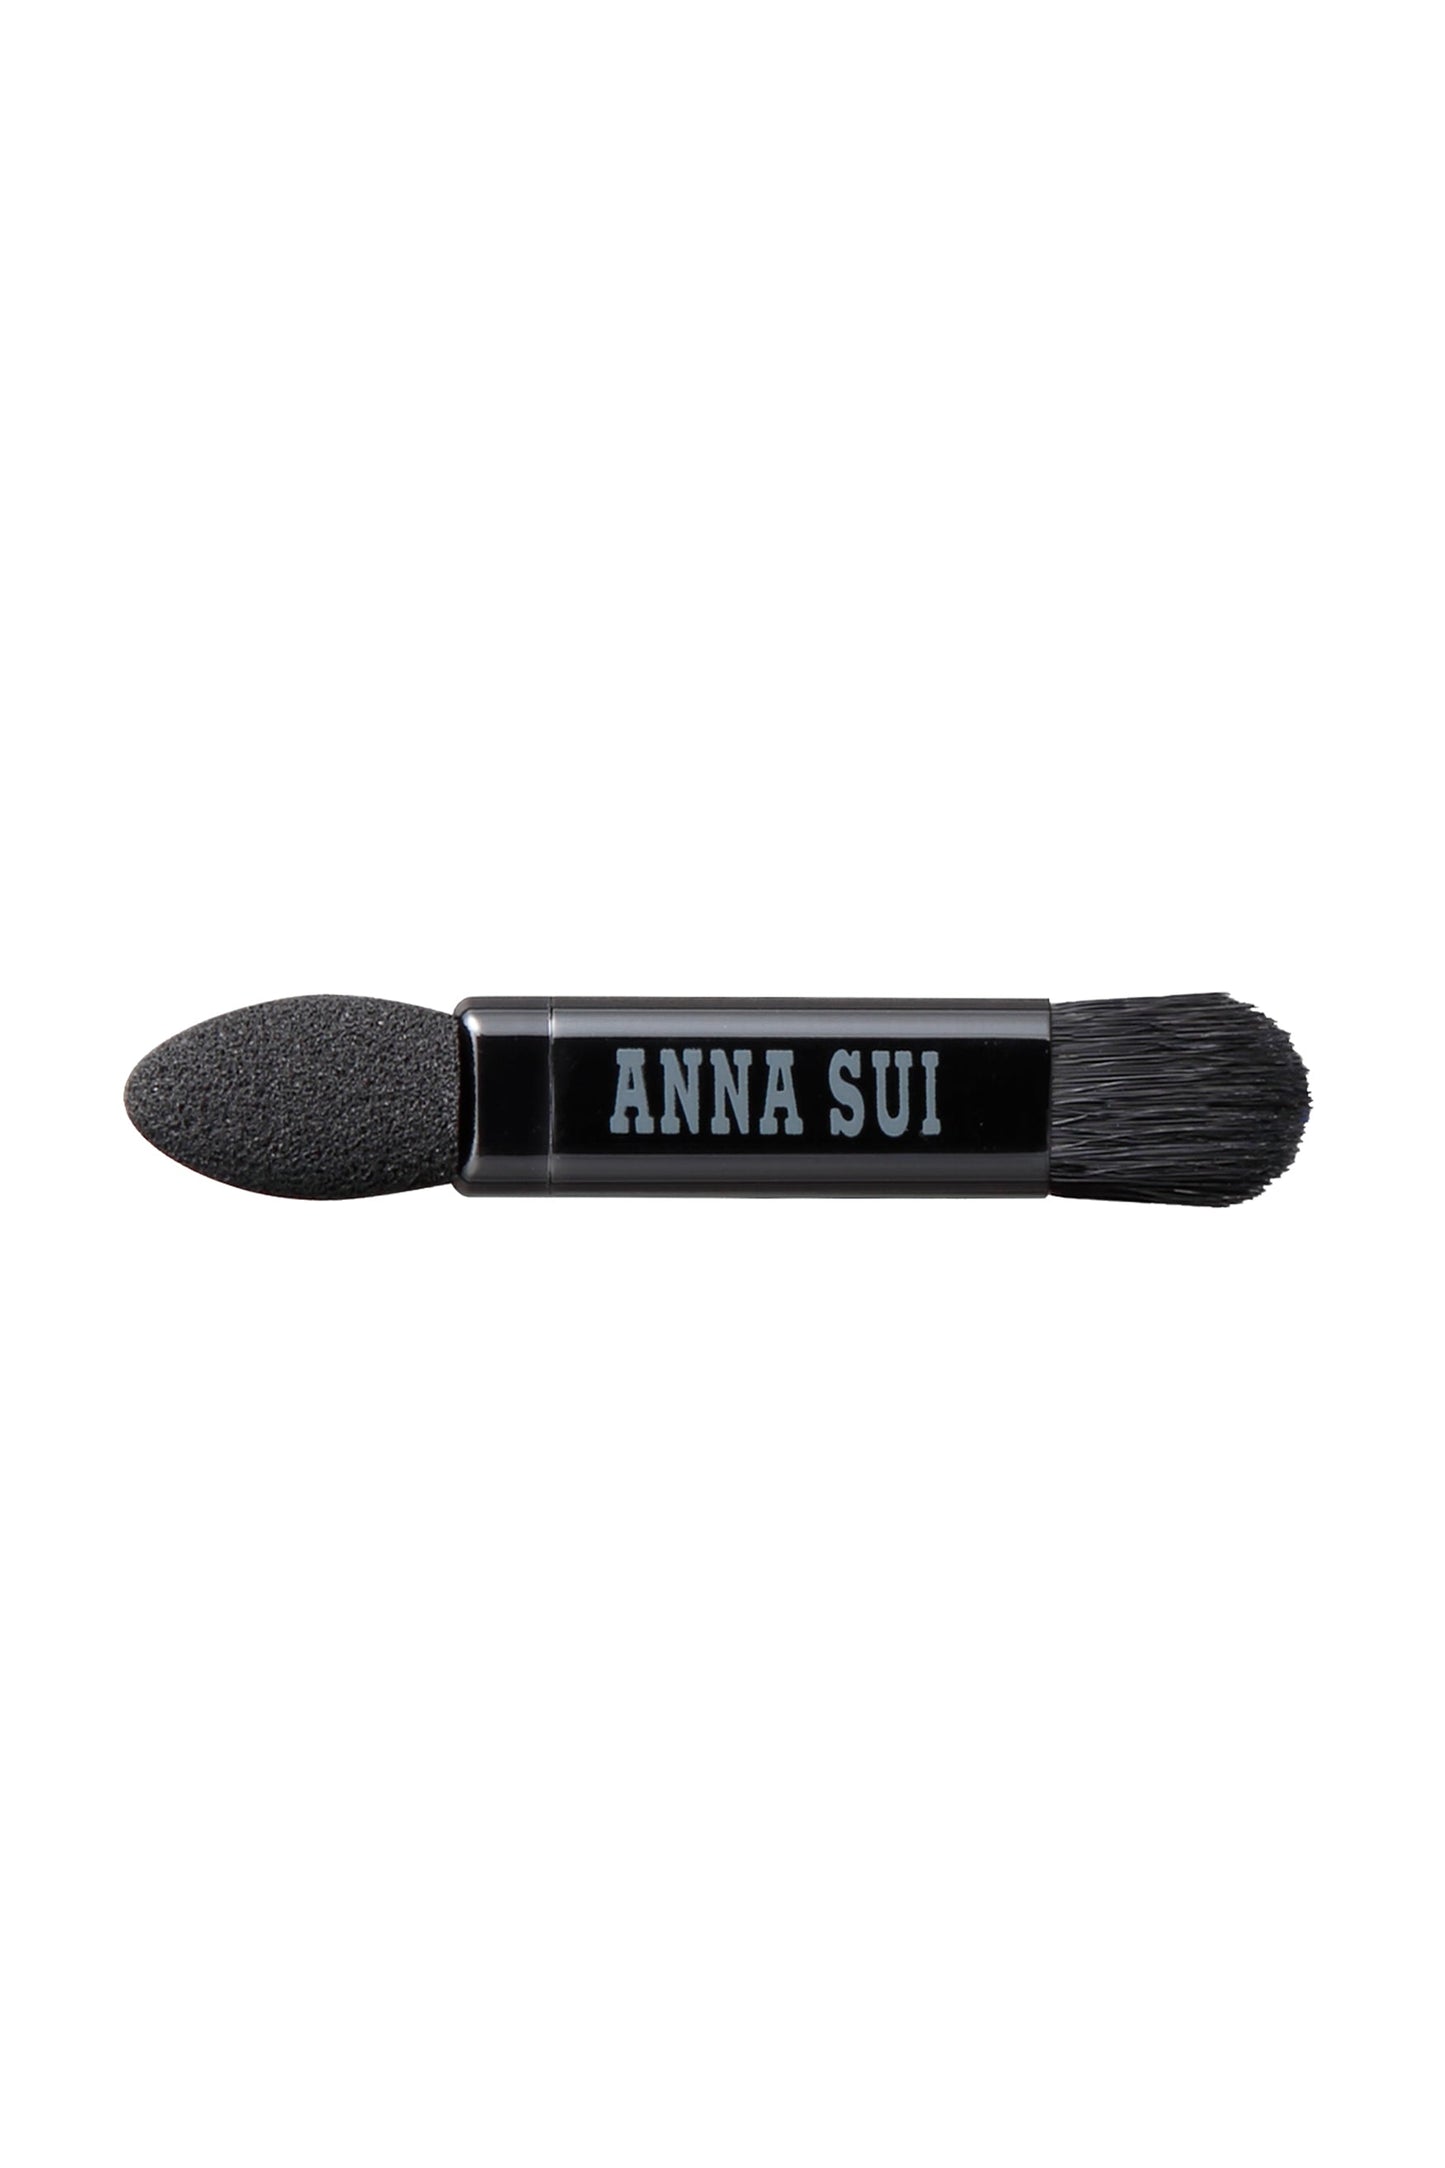 L'applicatore, una testa dura da un lato, una Bruch dall'altro, l'etichetta Anna Sui al centro.